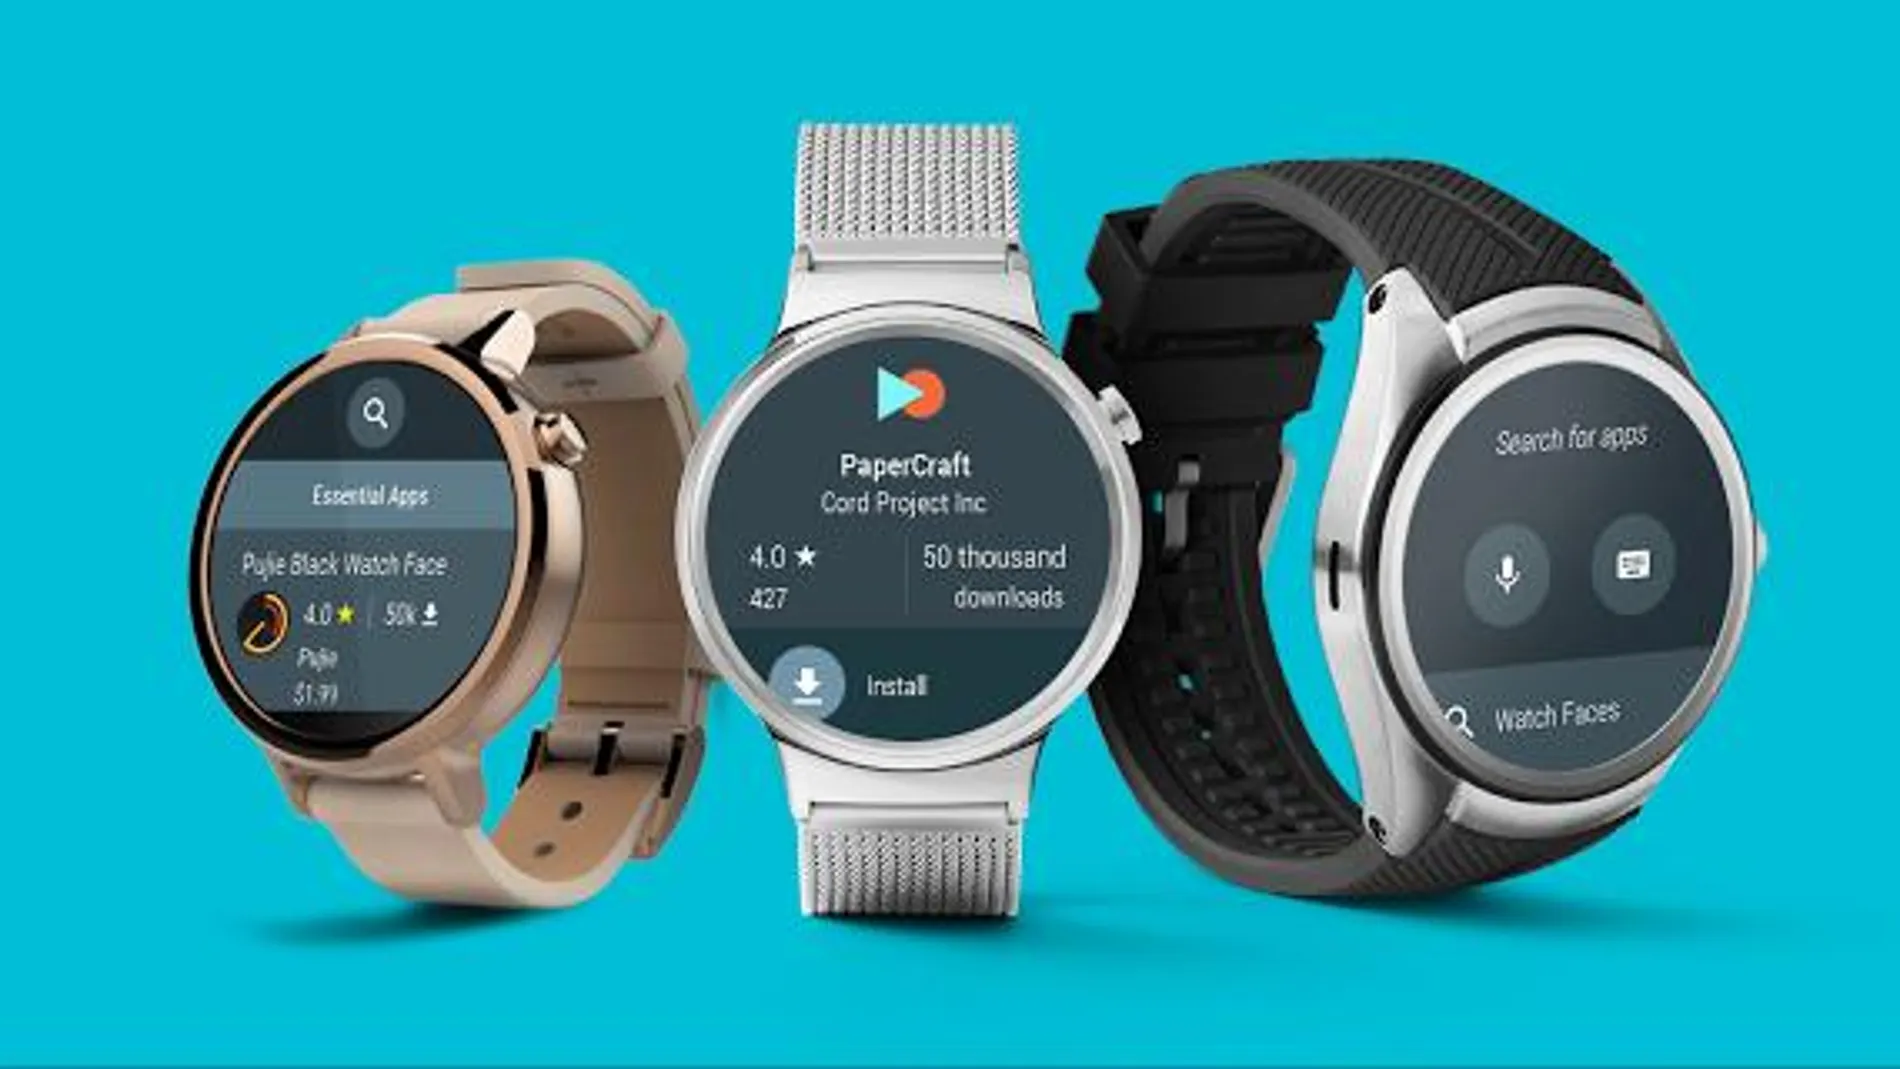 Los relojes con Android Wear tendrán su propia versión de Google Play